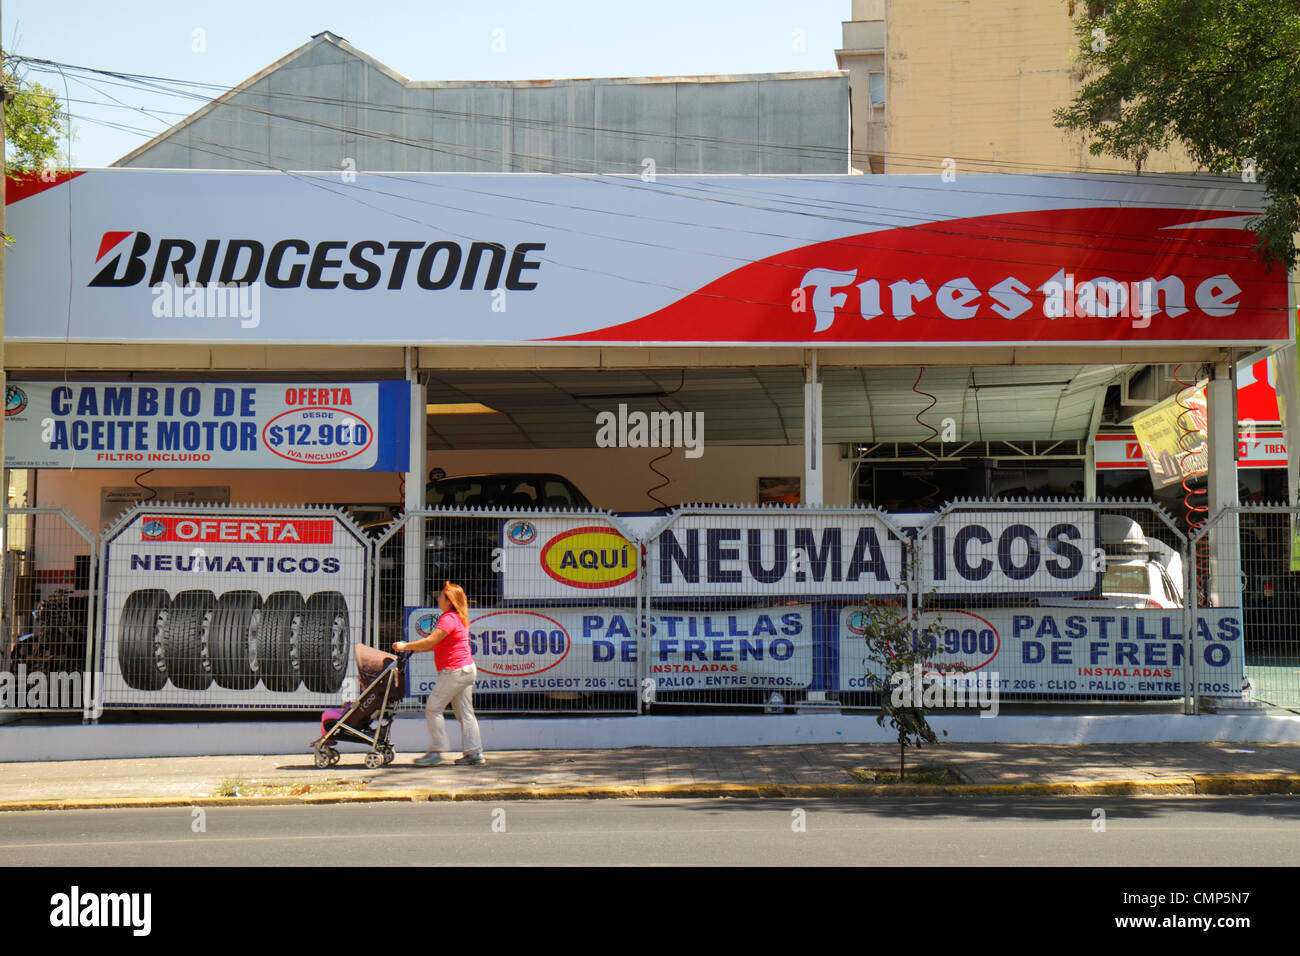 Santiago Chile,Providencia,Avenida Rancagua,Firestone Tire & Rubber Company,Bridgestone,American company,tires,retail sale,car services,sign,Spanish,H Stock Photo